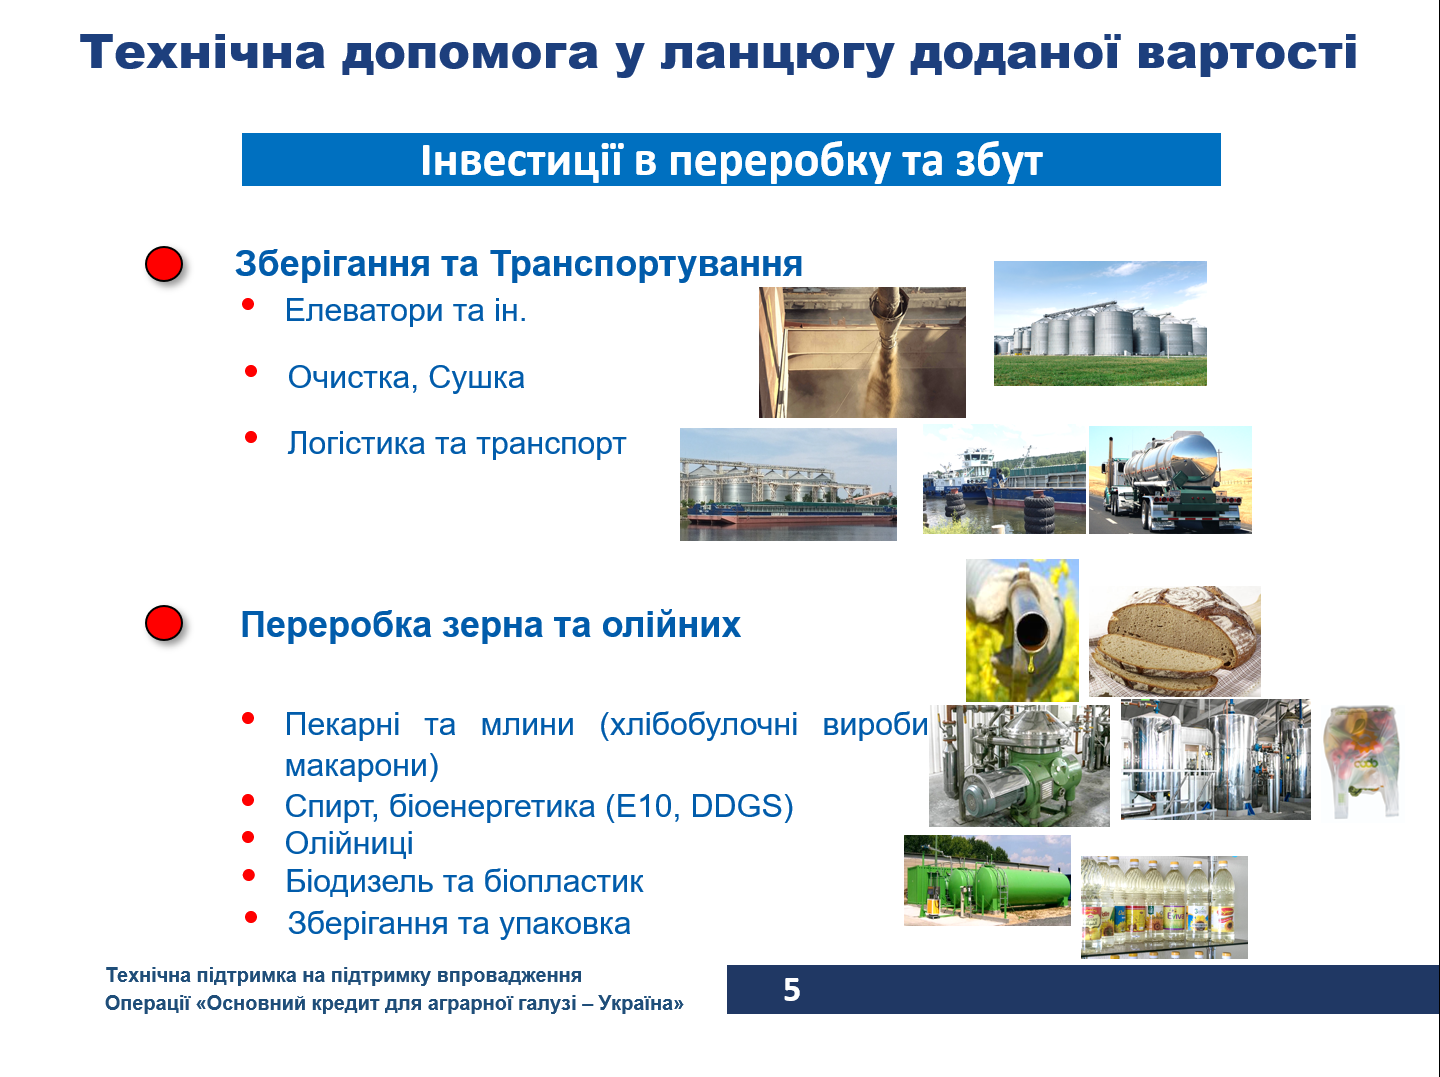 Додатково проект ЕІБ  “Основний кредит для аграрної галузі - Україна” 3